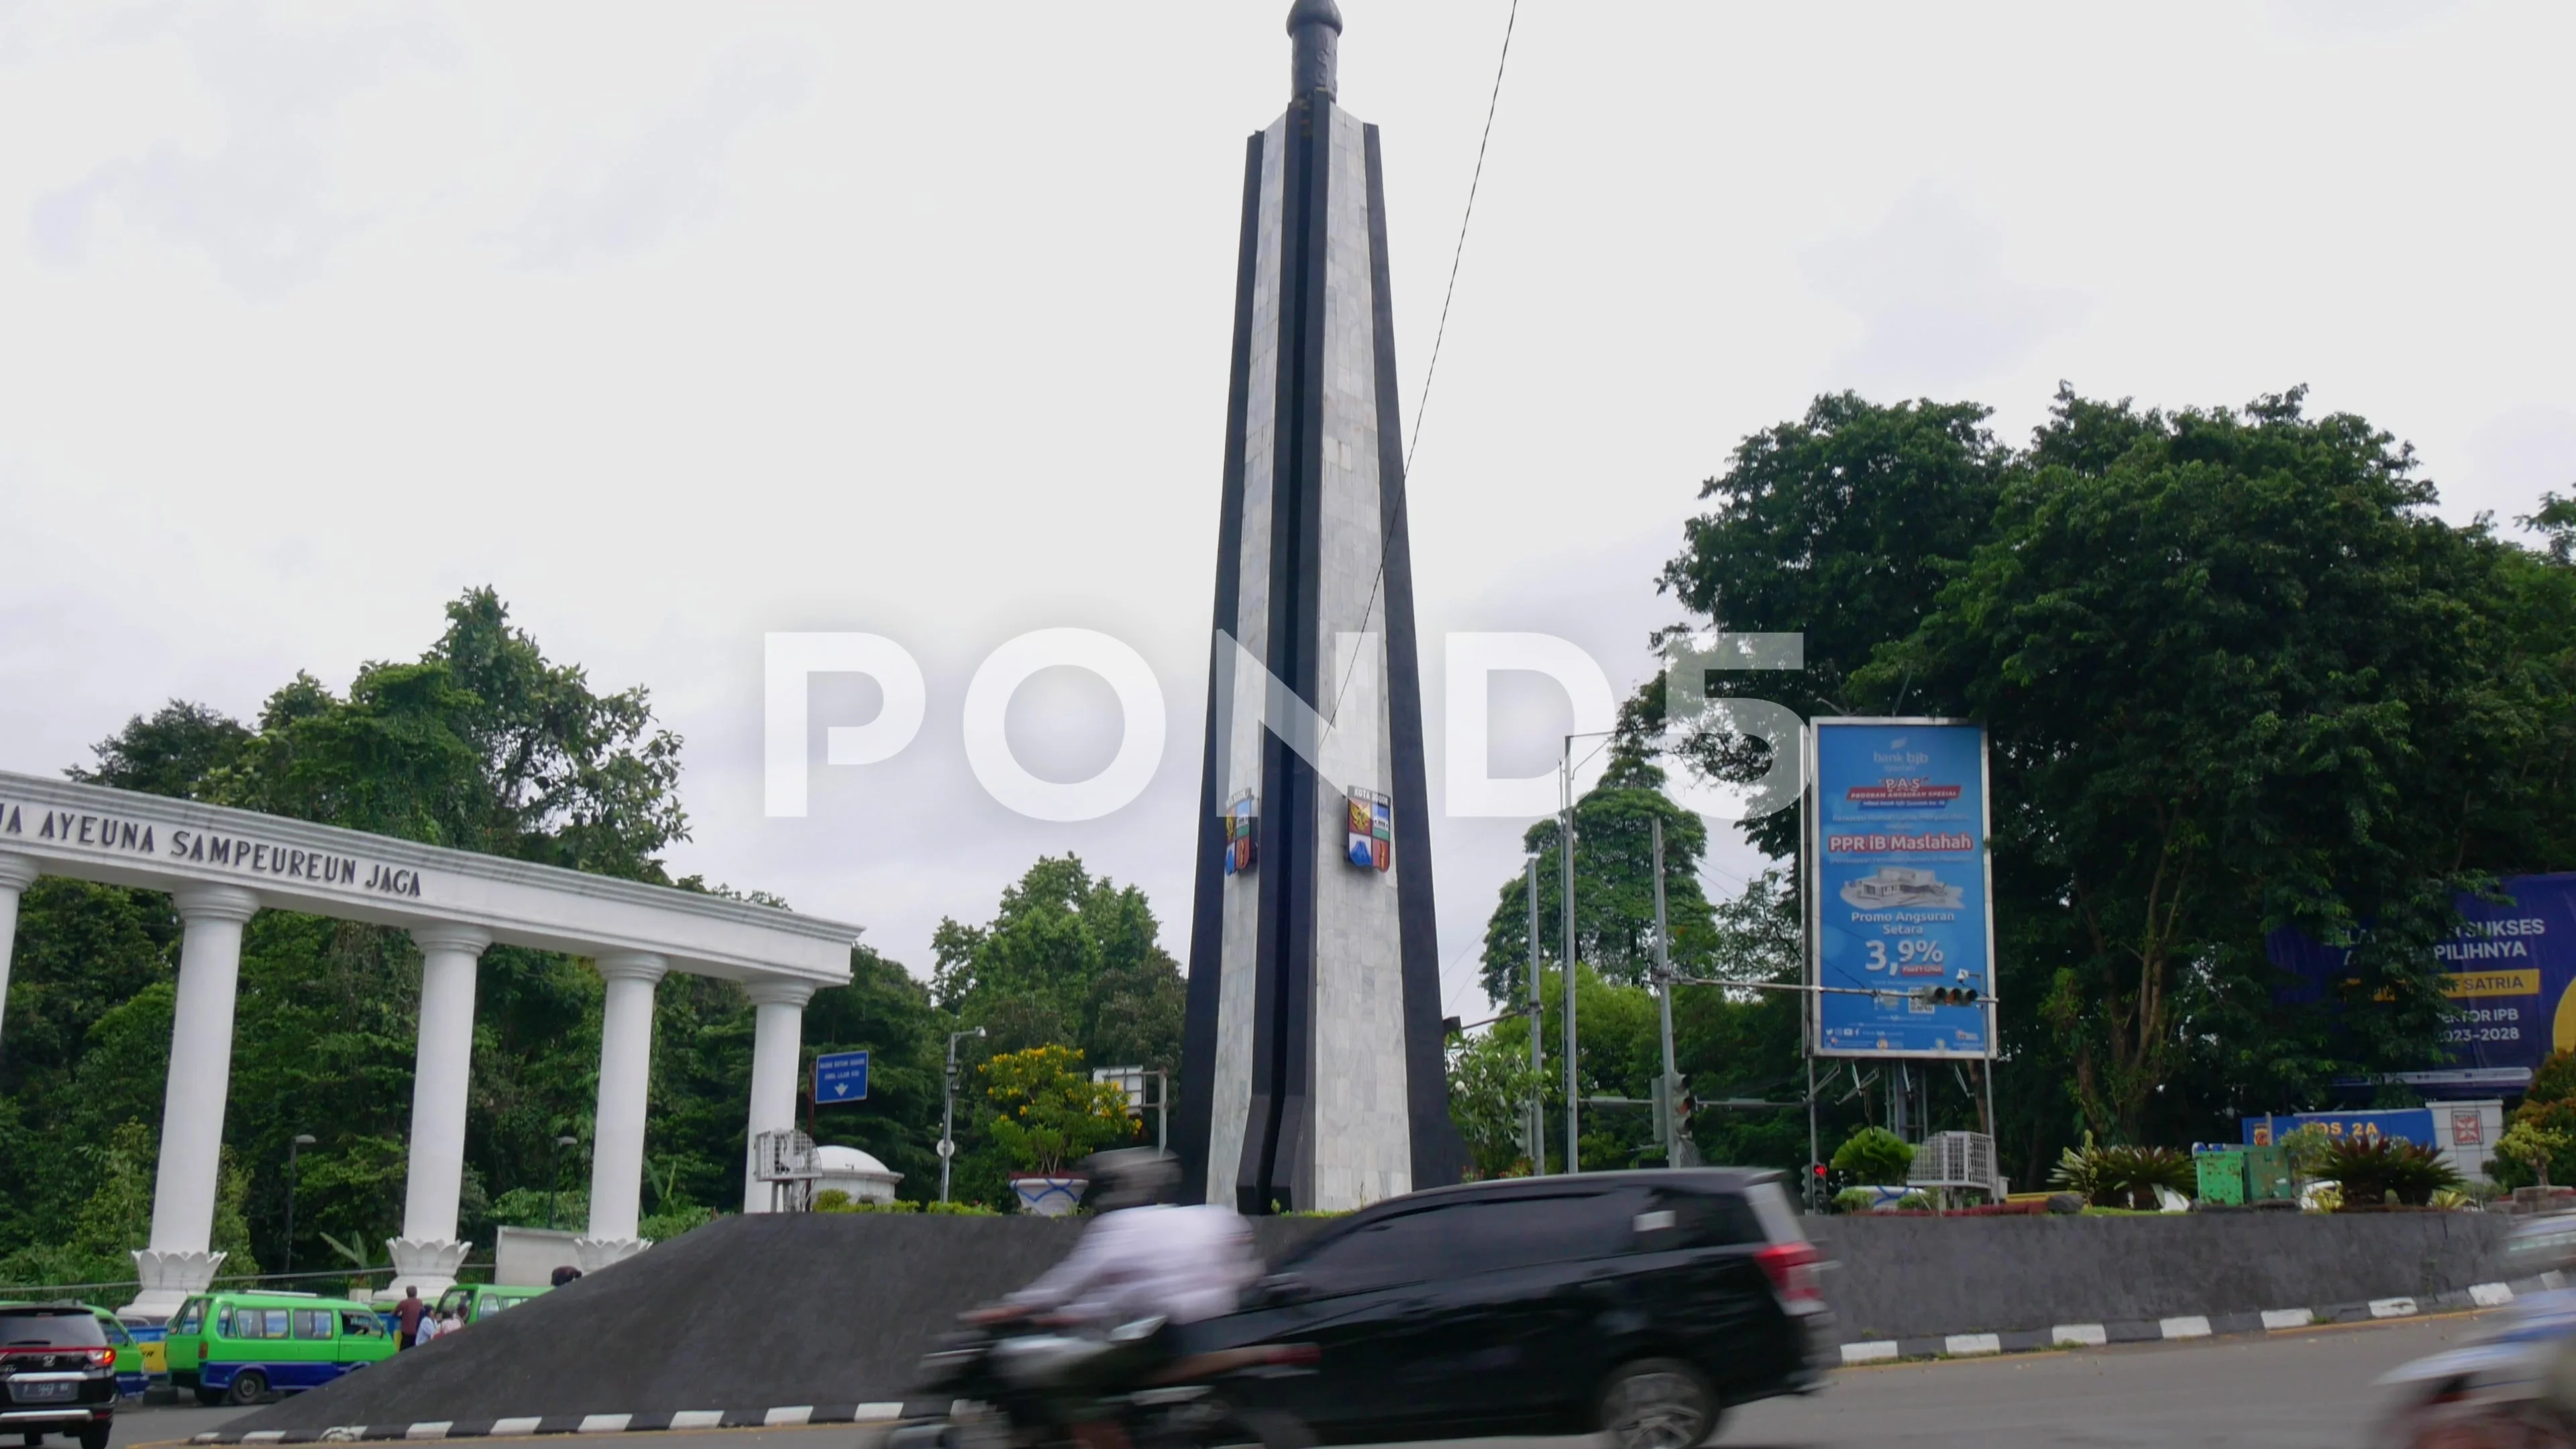 Kujang Monument' icon of Bogor City ** Tugu Kujang, menja… | Flickr